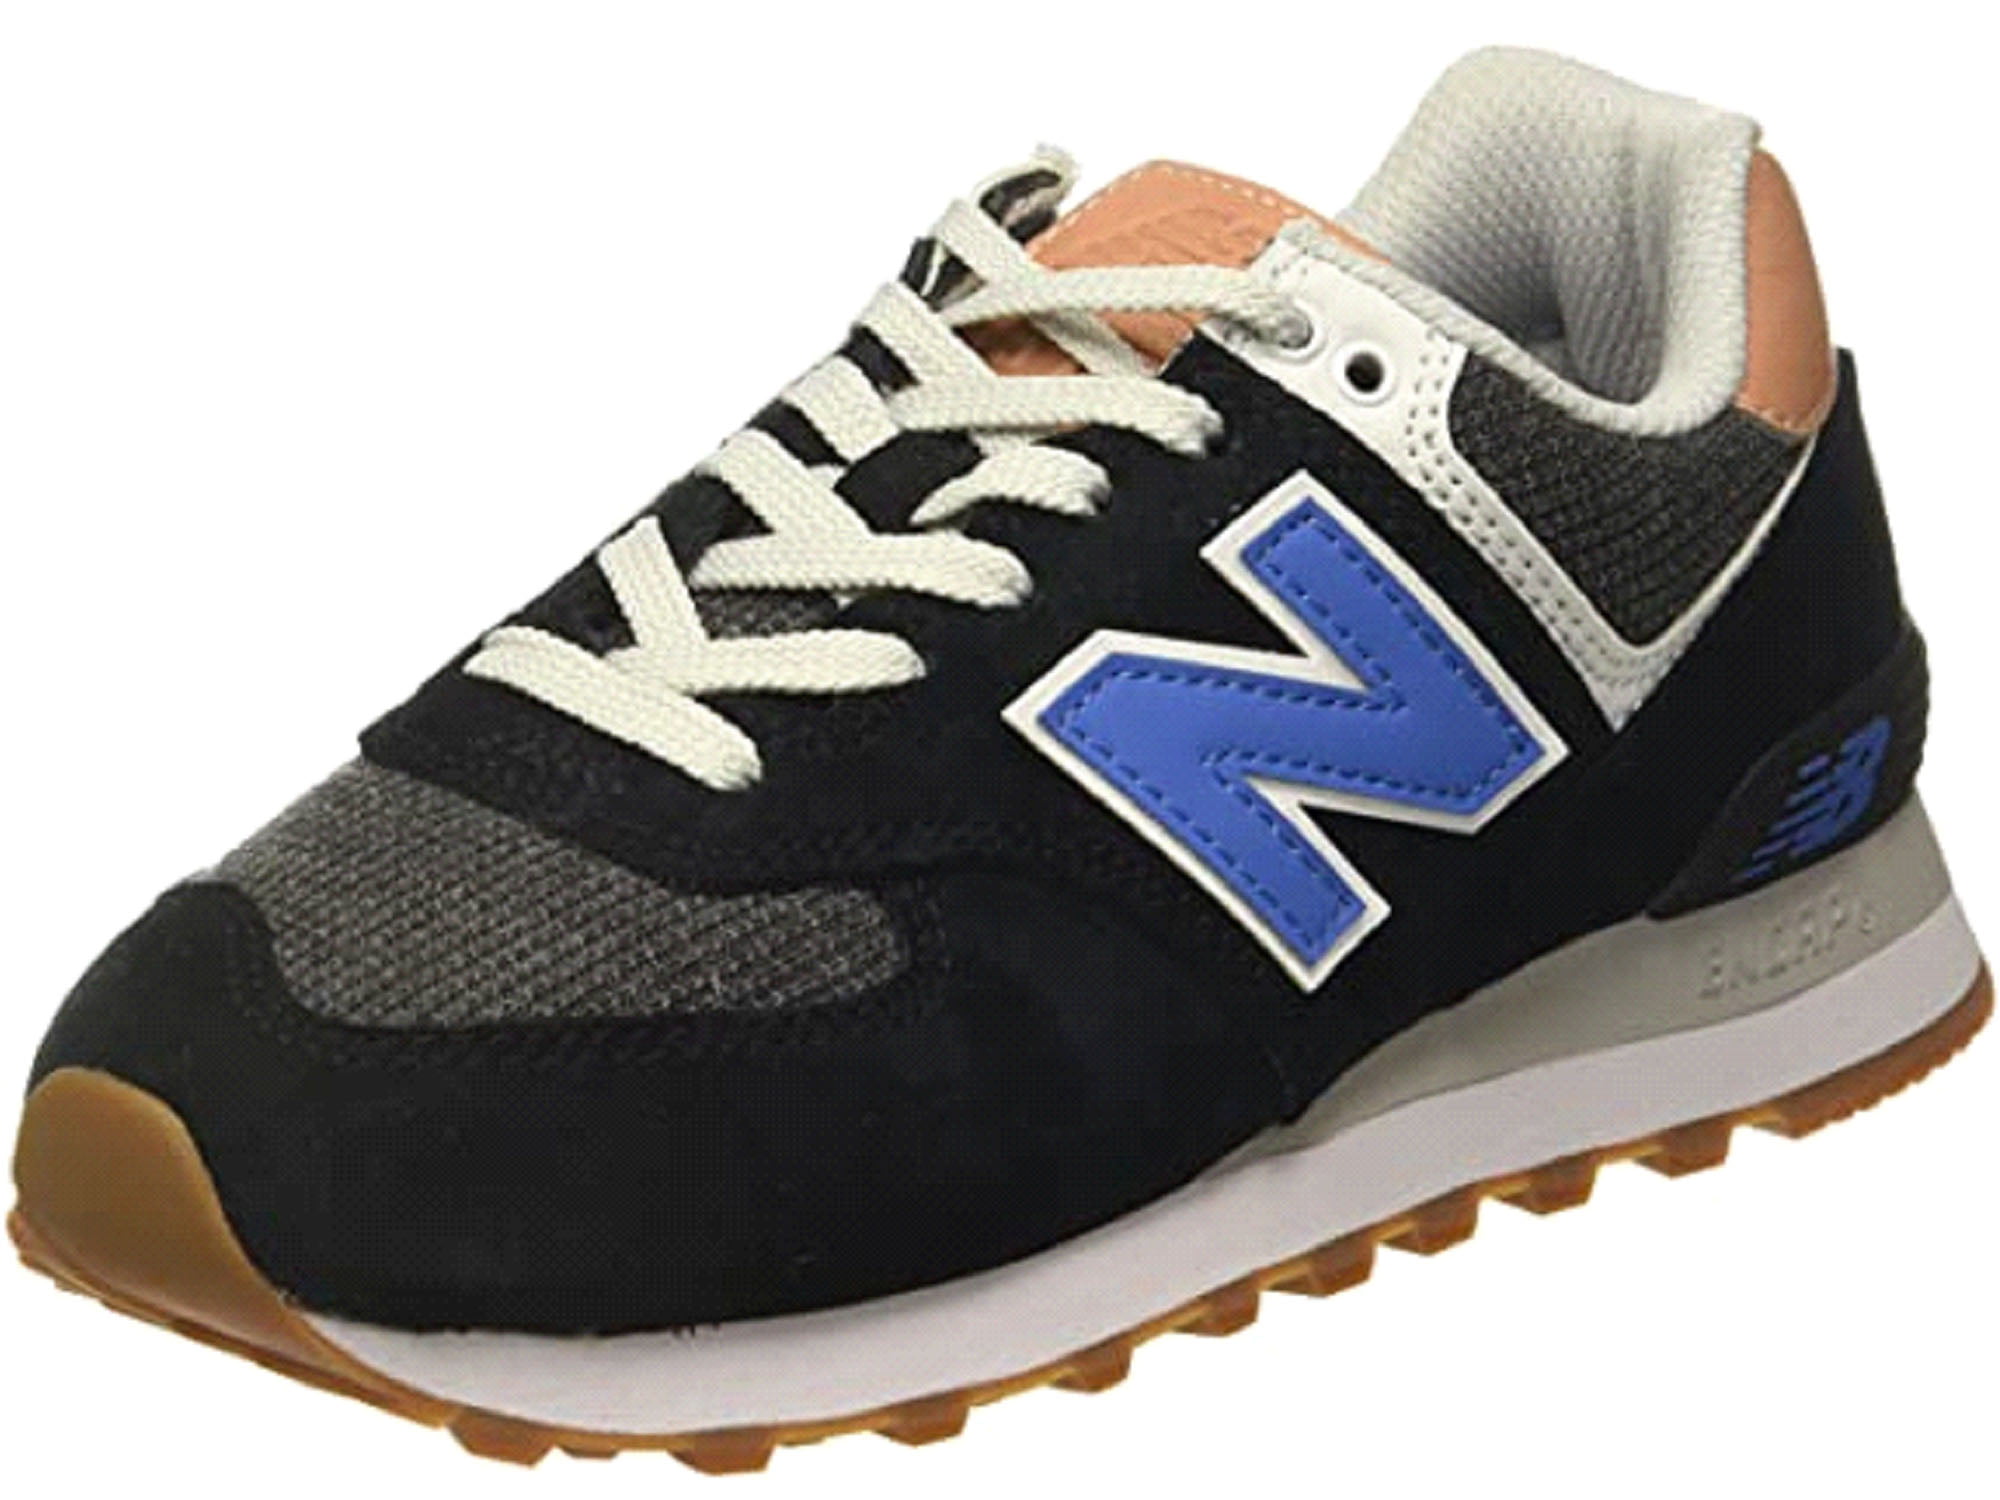 New Balance Men's 574 Sneaker Black/Faded Mahogany - 9 -